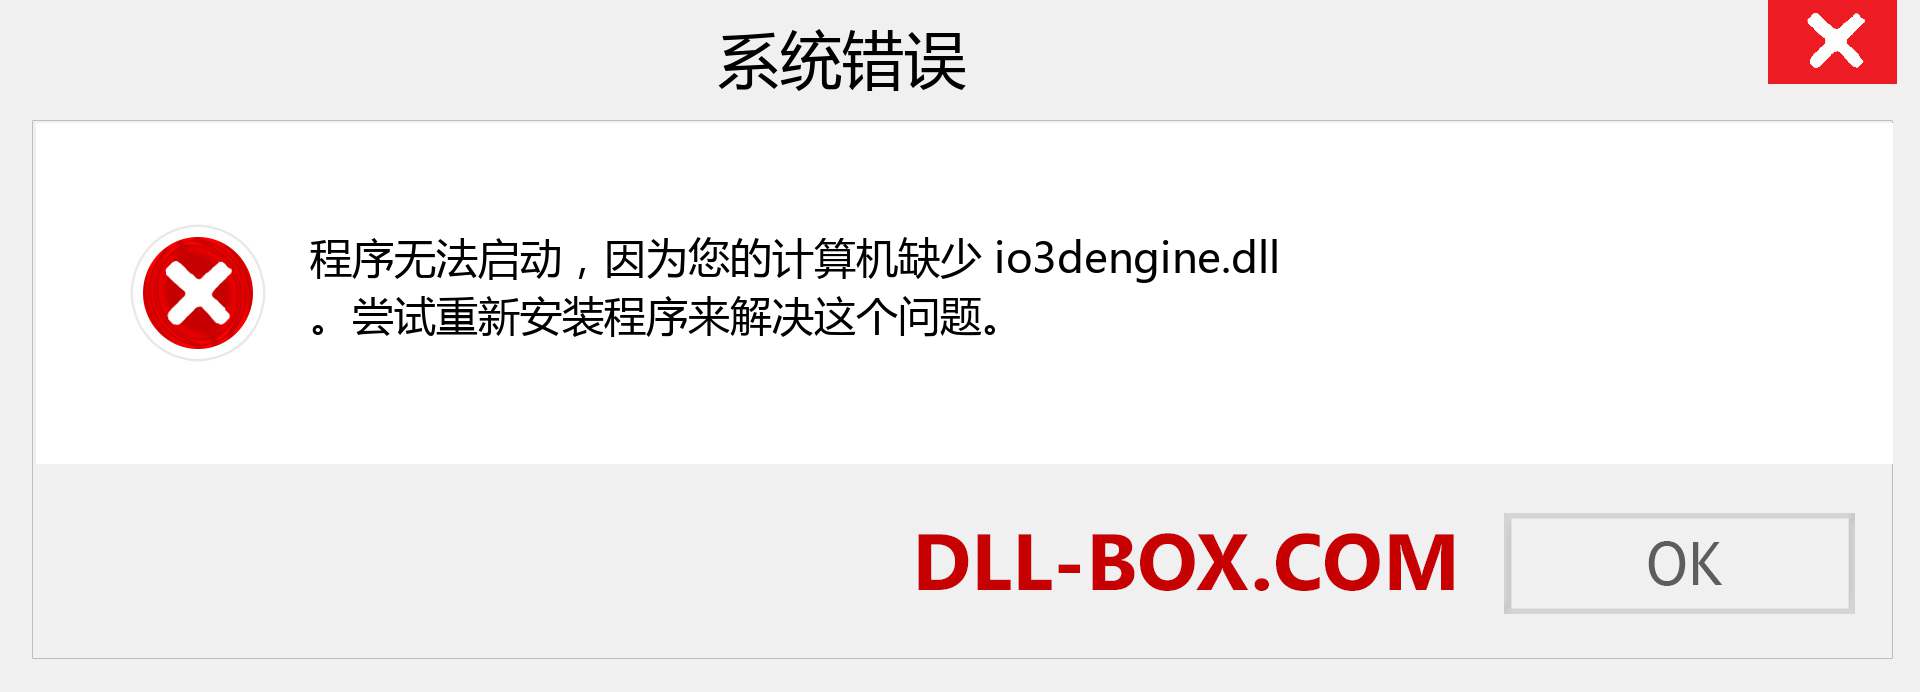 io3dengine.dll 文件丢失？。 适用于 Windows 7、8、10 的下载 - 修复 Windows、照片、图像上的 io3dengine dll 丢失错误